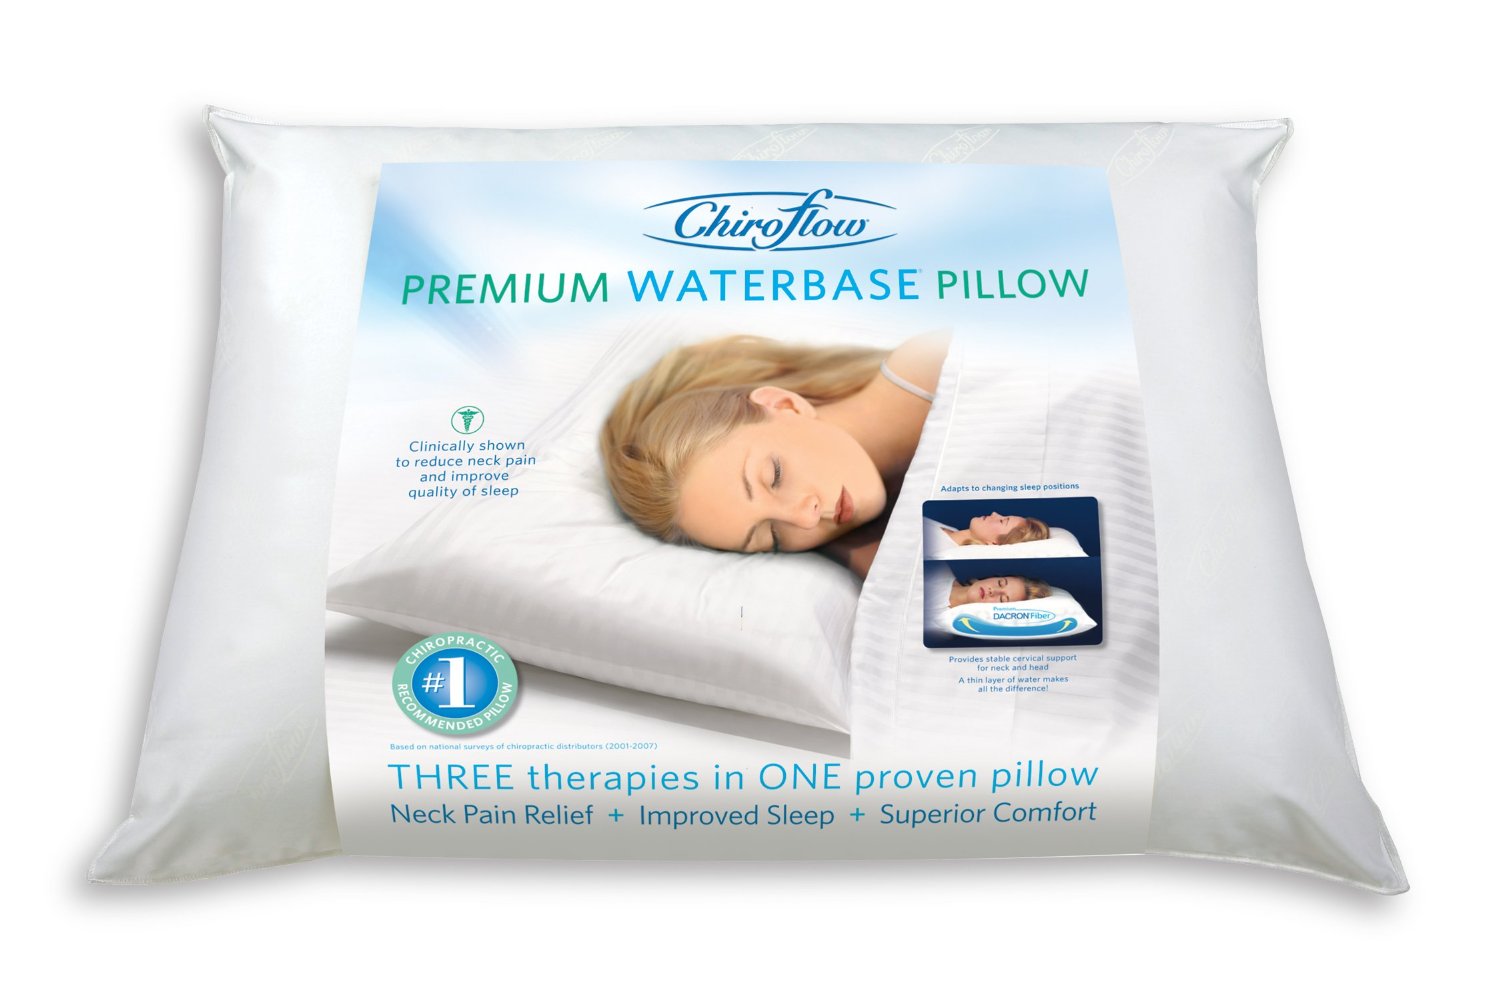 Chiroflow waterbase pillow